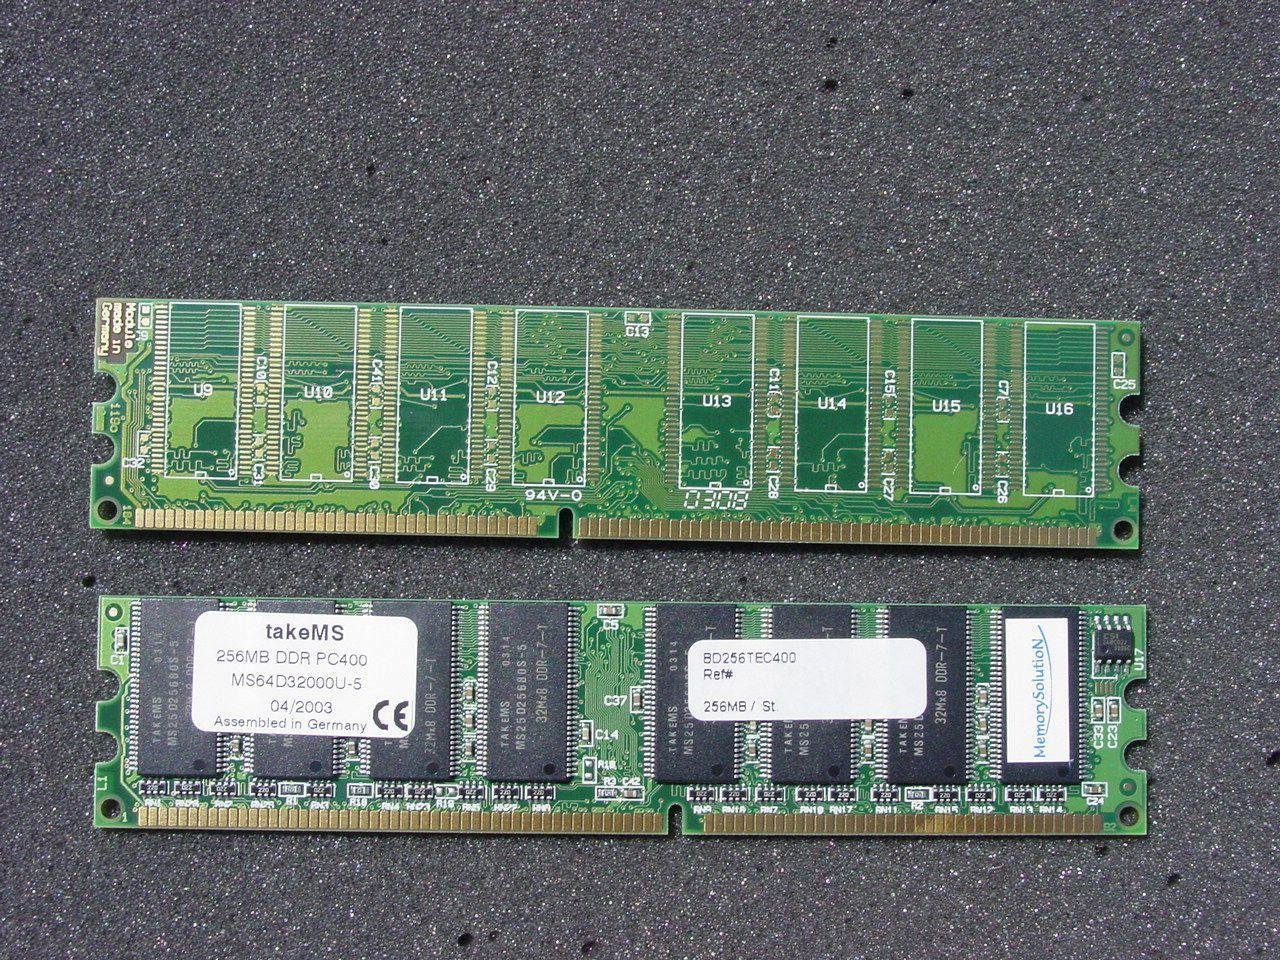 takeMS 256 MB DDR400